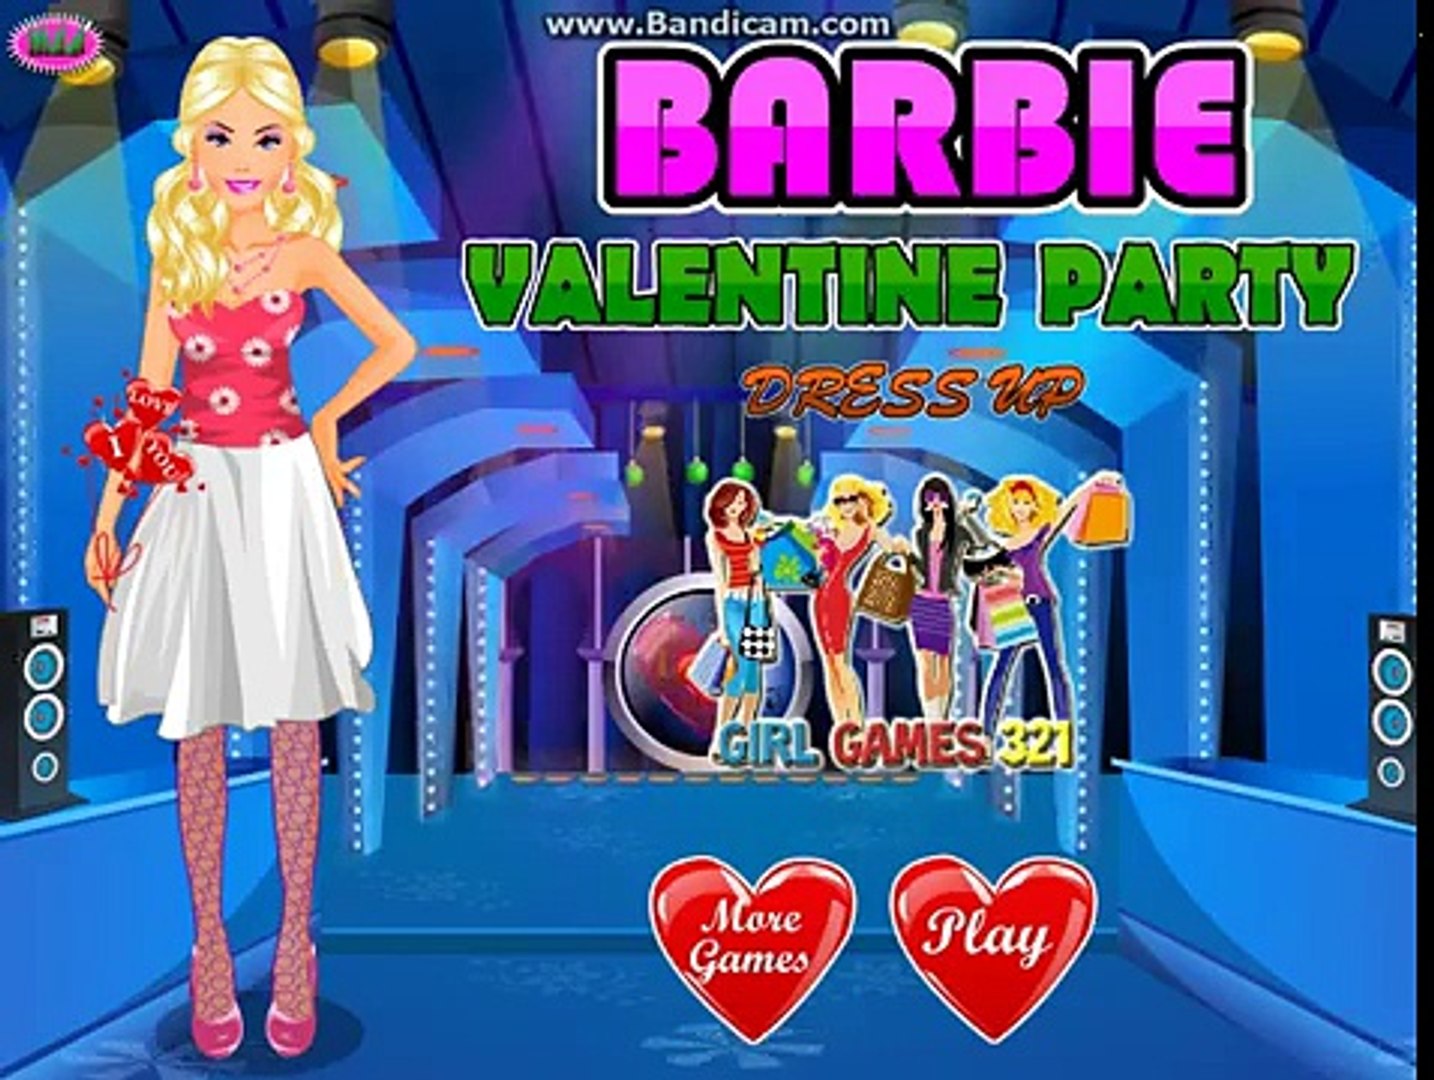 ⁣Pripreme za Valentinovo - Barbi igre